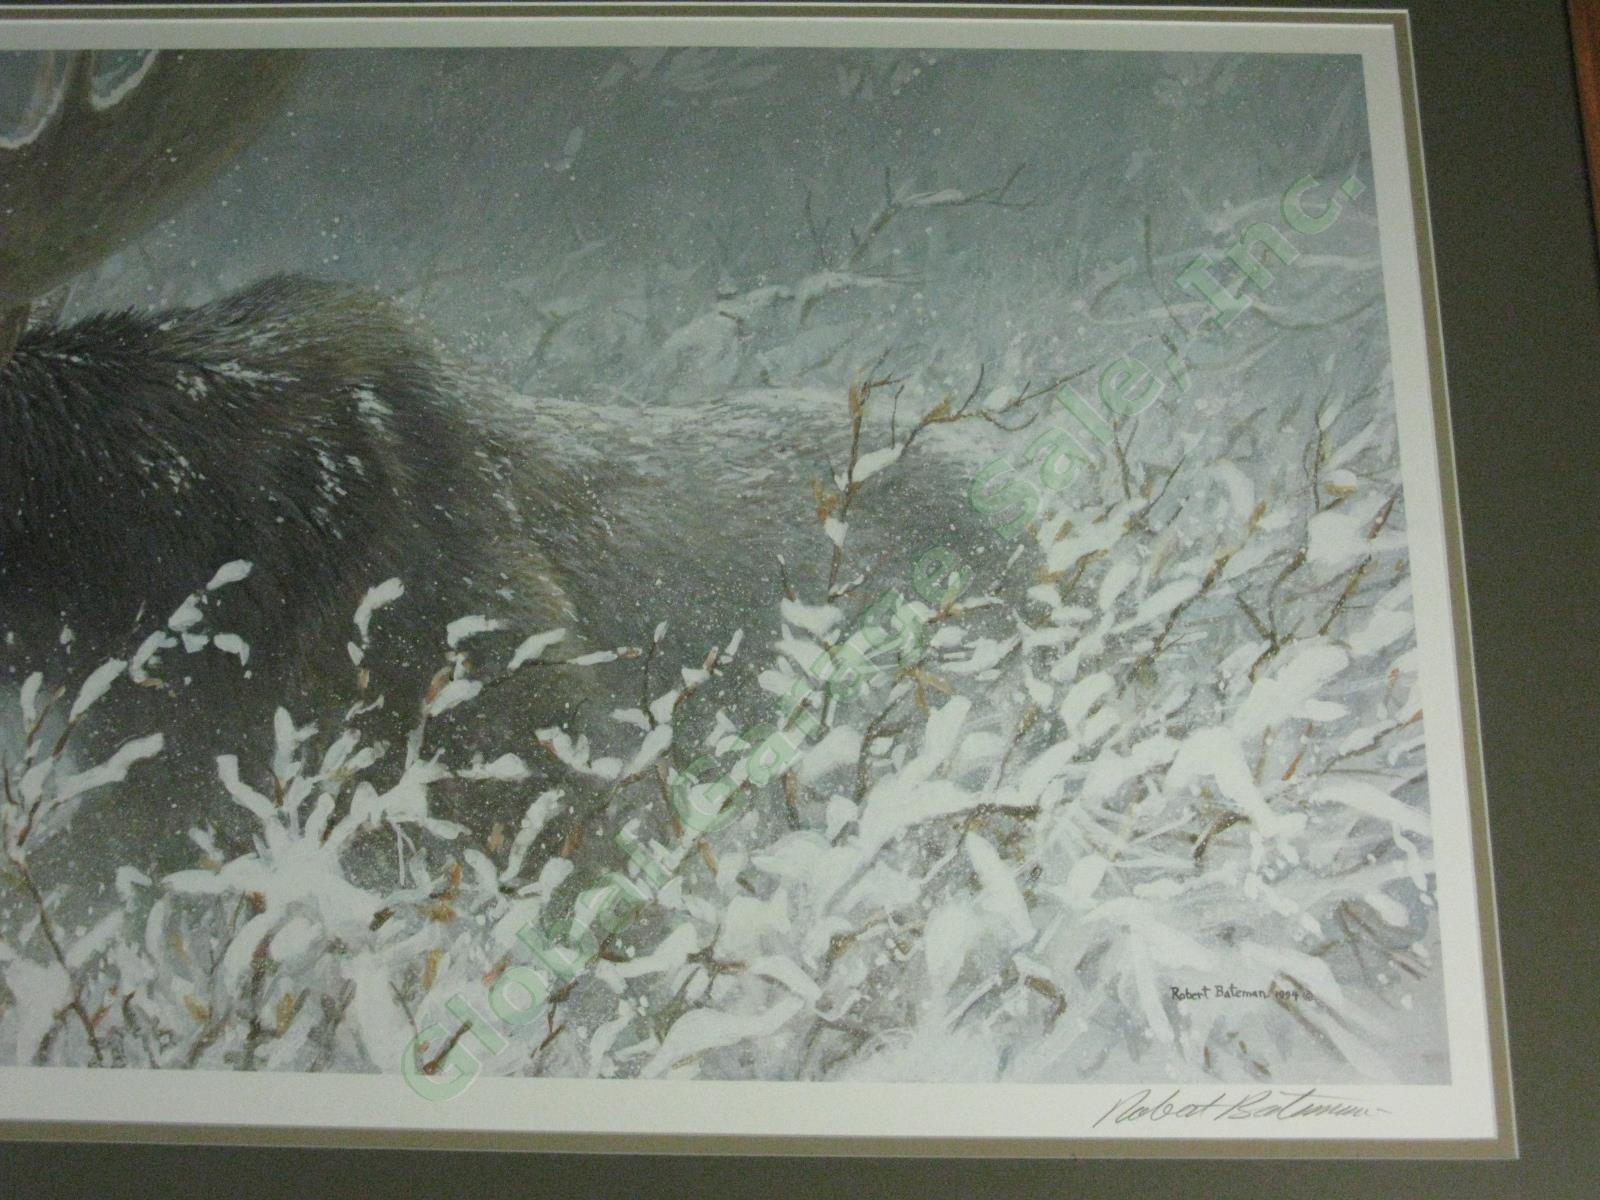 Robert Bateman 1994 Signed Print Winter Run Bull Moose Ltd Ed #164/1950 16"x32" 3